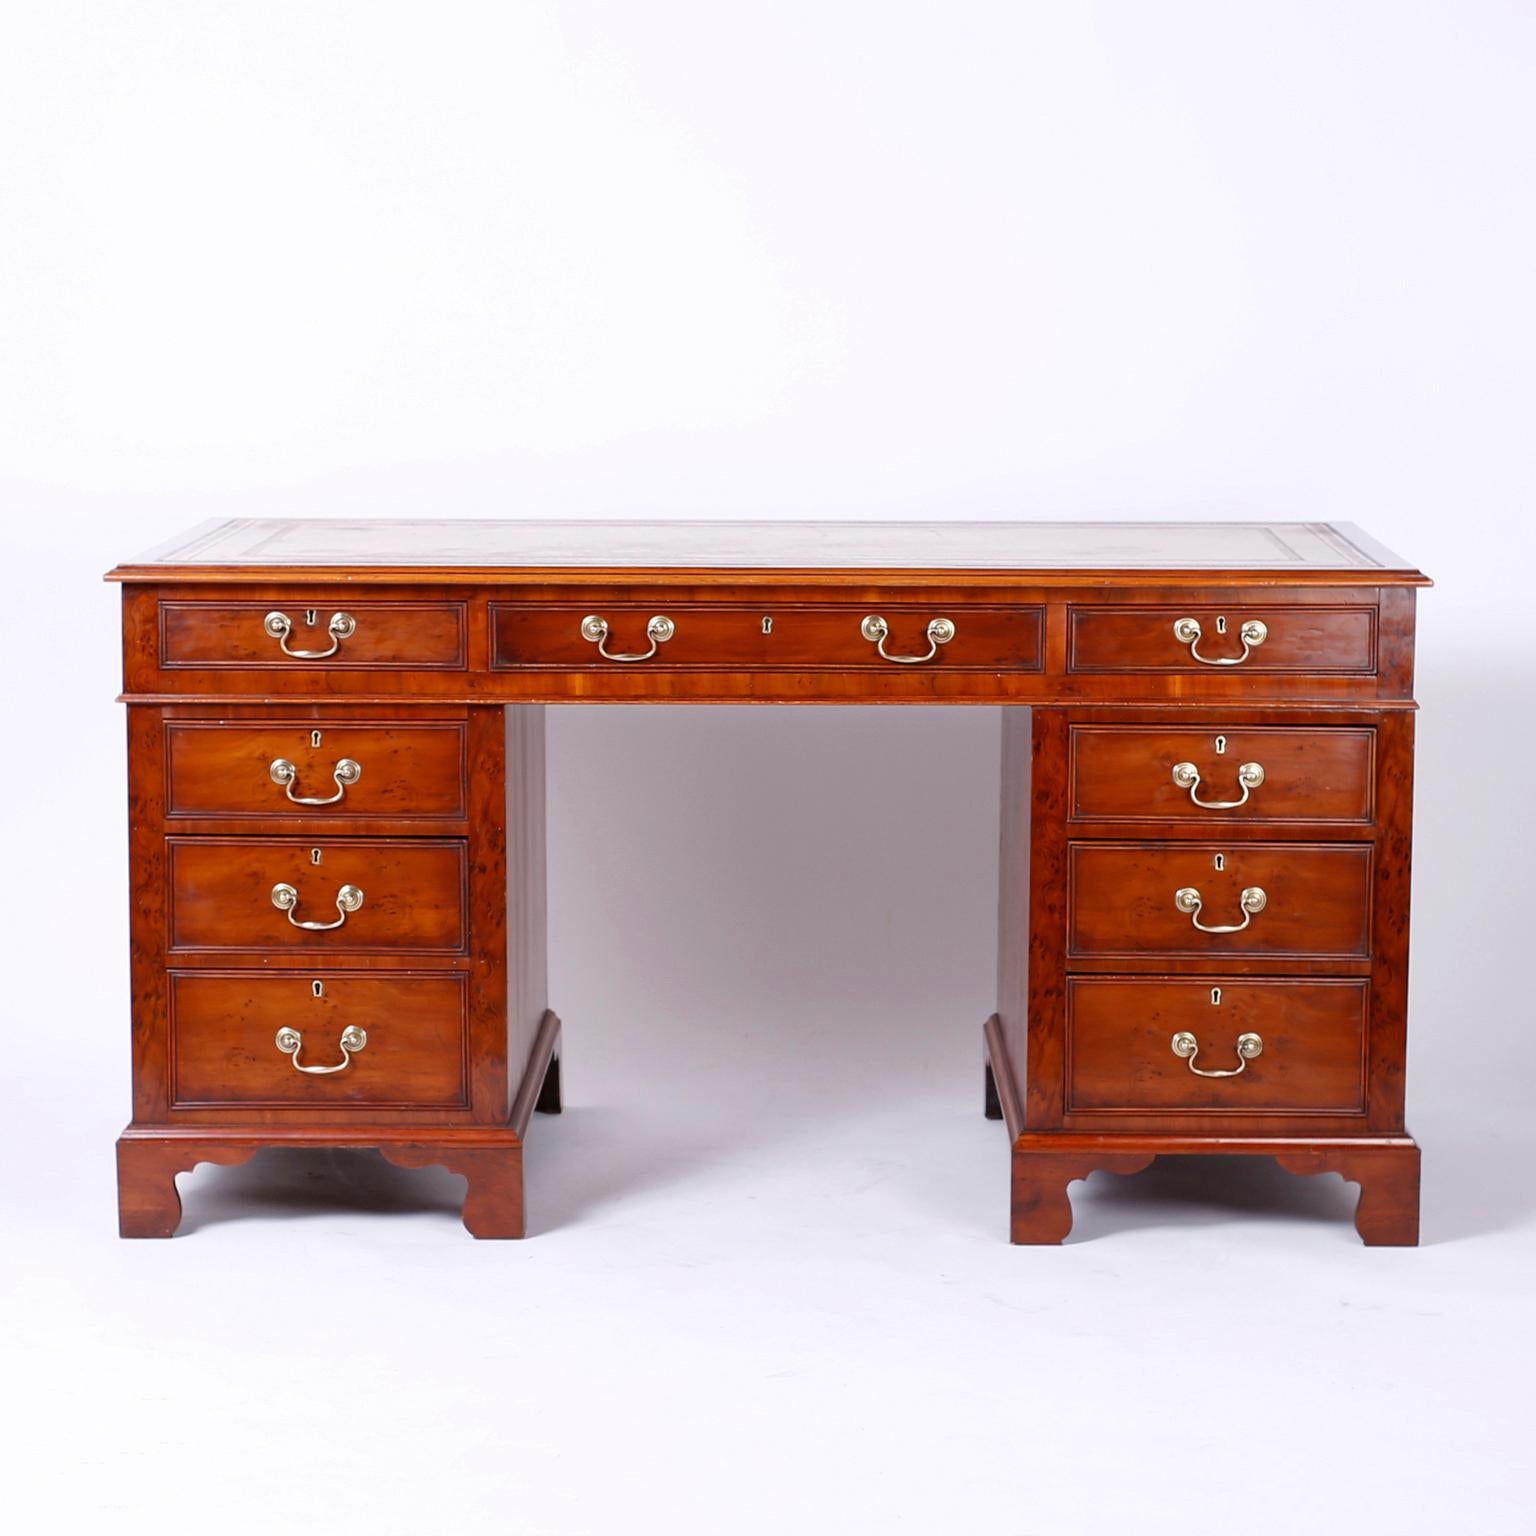 Antiker englischer Schreibtisch aus dem 19. Jahrhundert, gefertigt aus gut gemasertem und genopptem Eibenholz, mit der originalen zugerichteten senffarbenen Lederplatte, die jetzt perfekt gealtert ist, neun Schubladen vorne, bearbeitete Rückseite